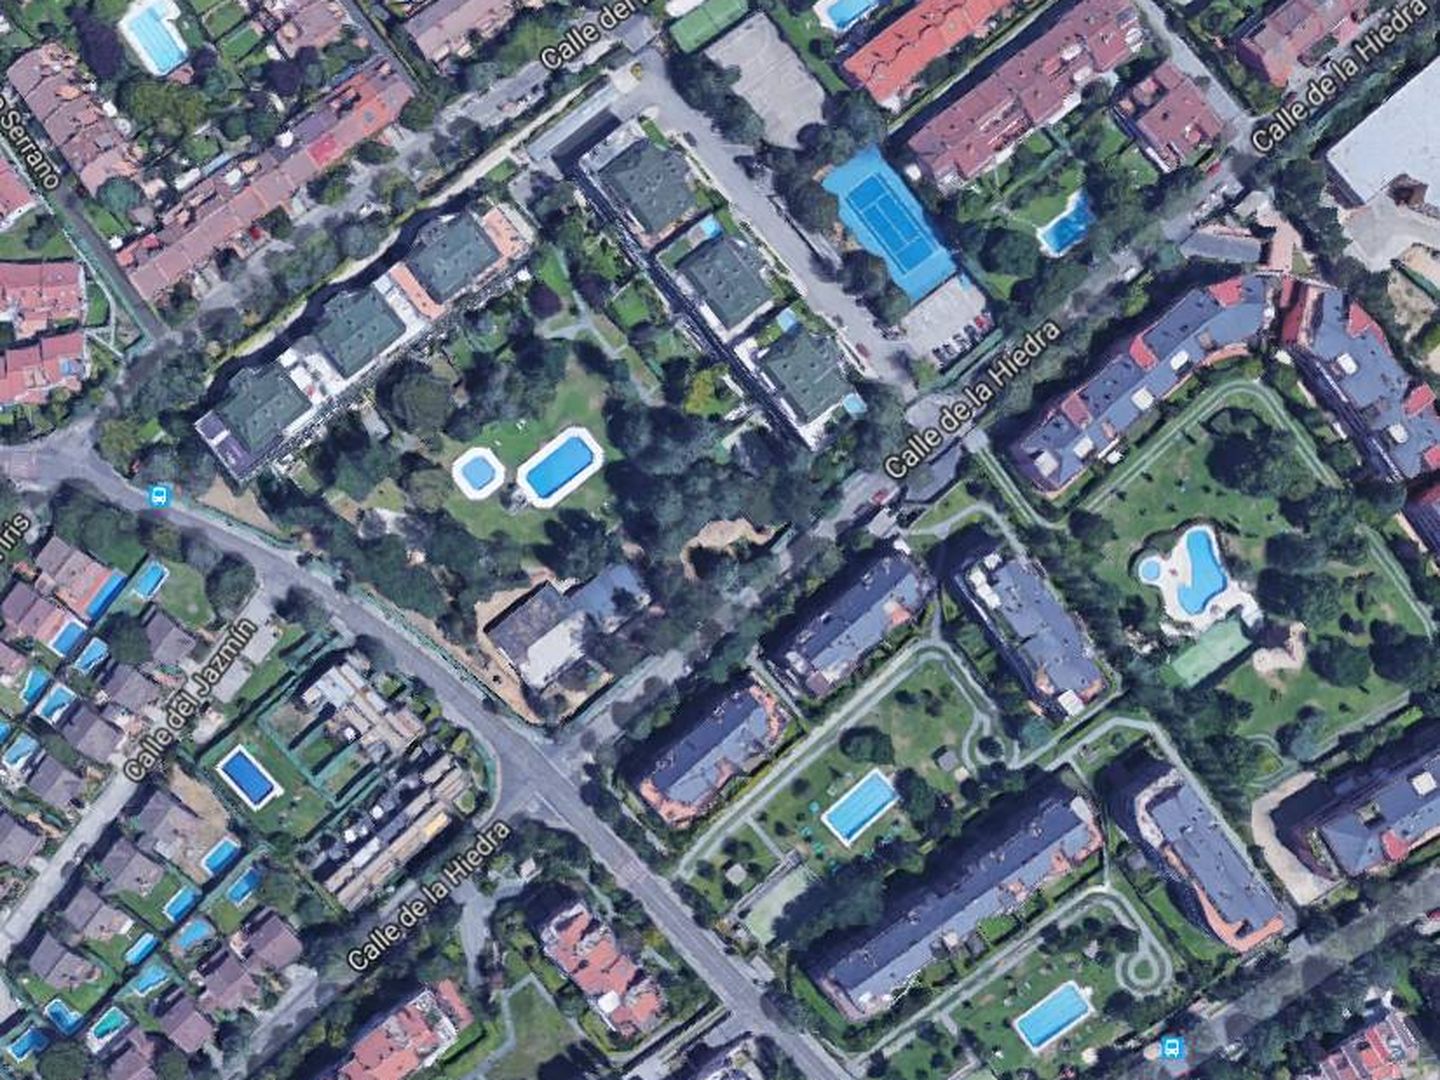 Vista aérea de la calle donde está la vivienda de Patricia Conde. (Google)